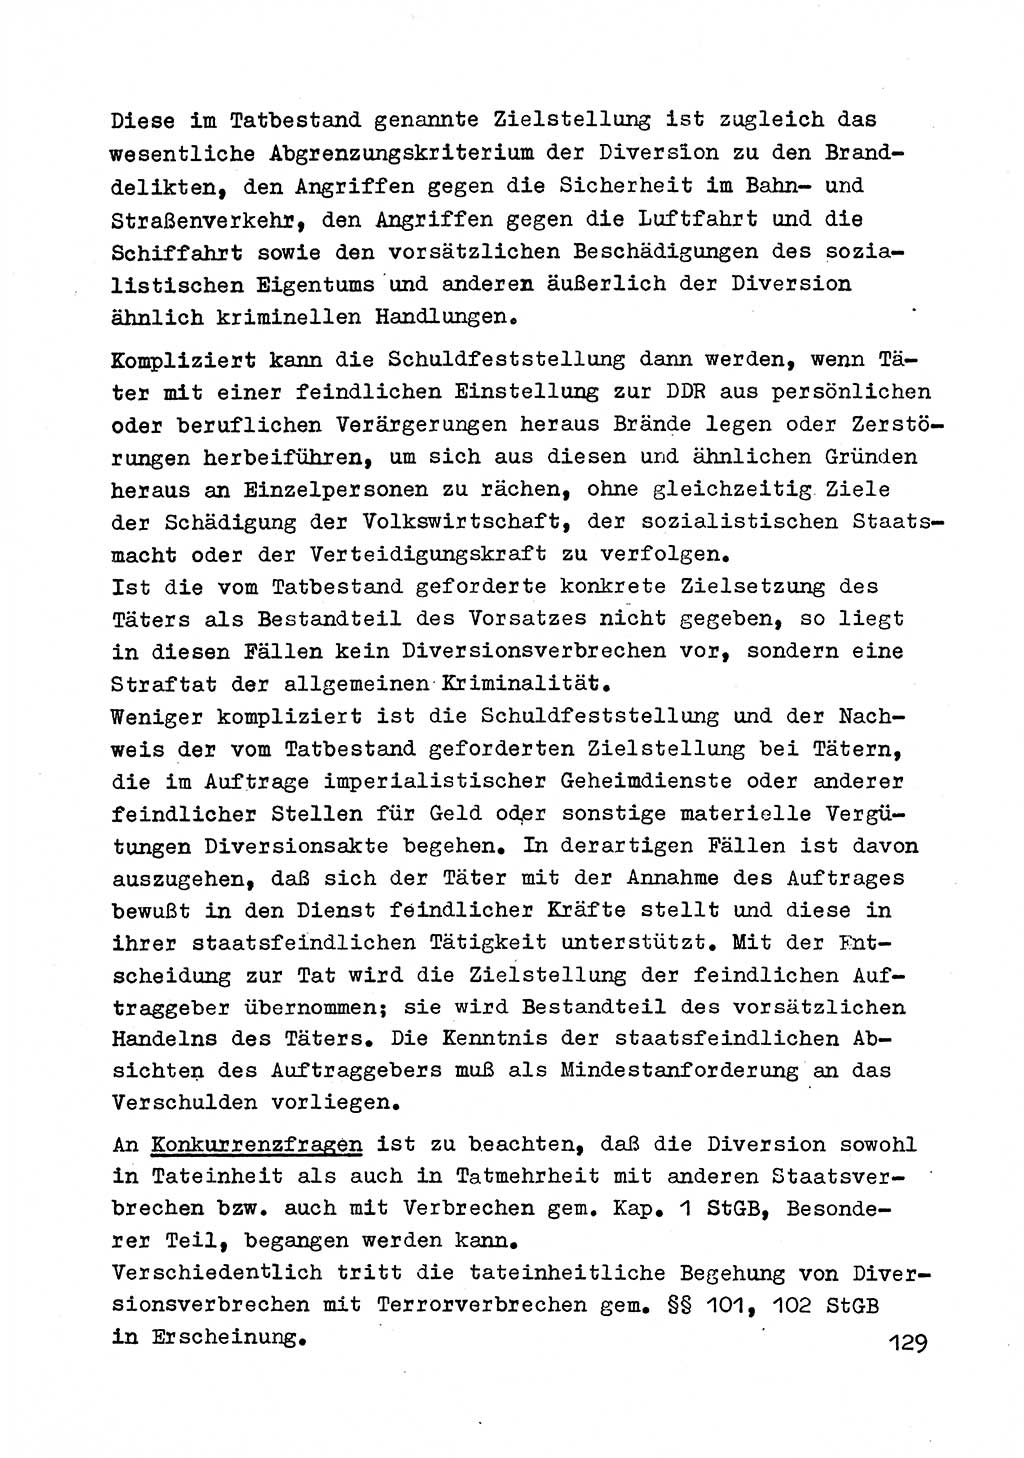 Strafrecht der DDR (Deutsche Demokratische Republik), Besonderer Teil, Lehrmaterial, Heft 2 1969, Seite 129 (Strafr. DDR BT Lehrmat. H. 2 1969, S. 129)